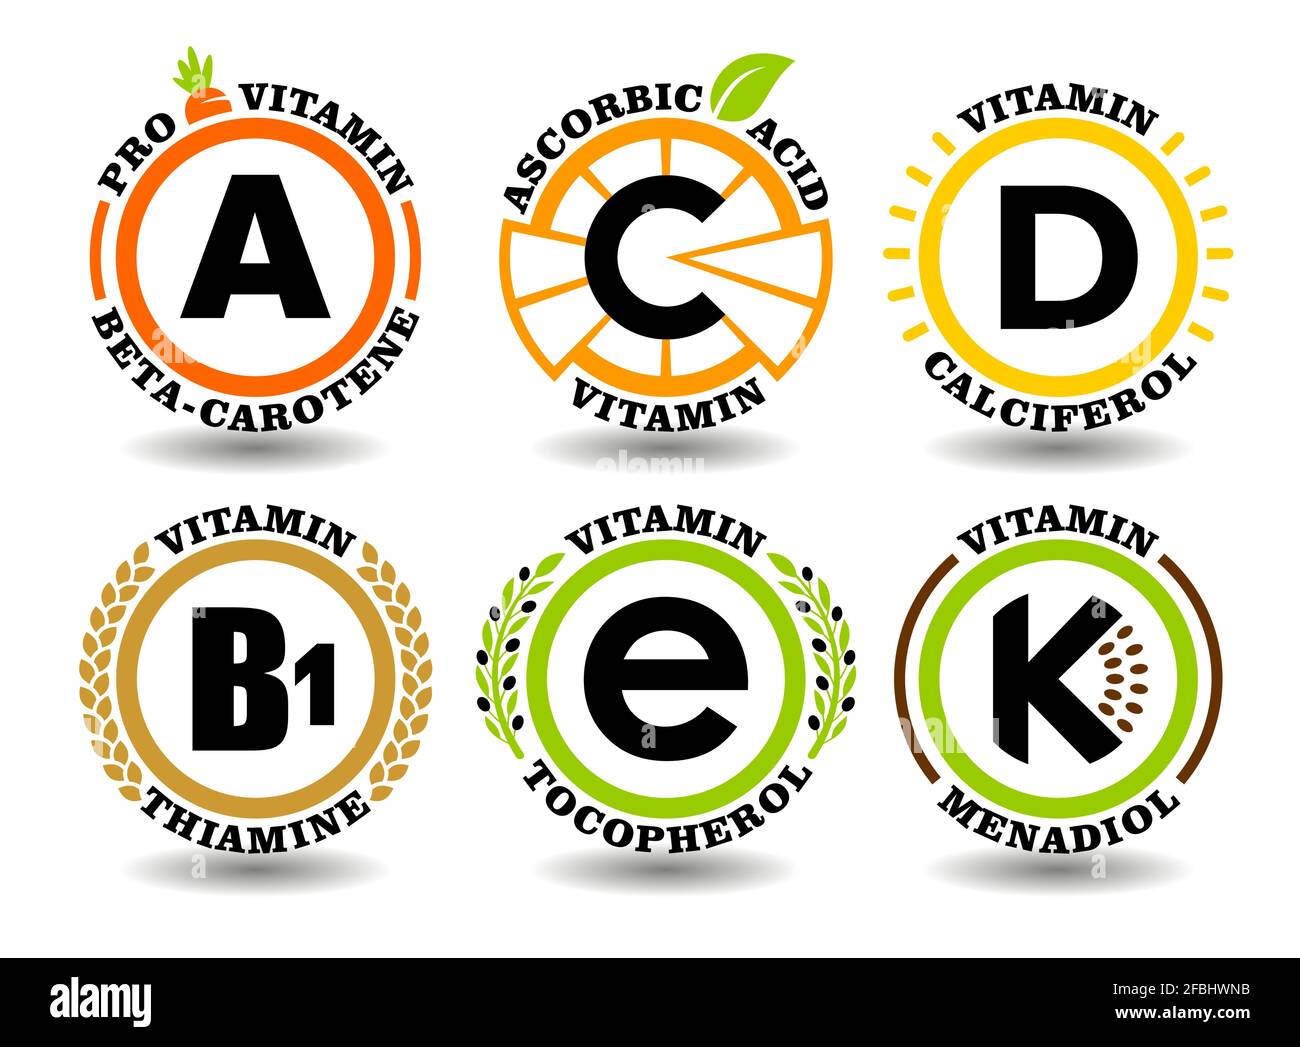 Creative Concept Vektor-Set aus A, B, C, D, E, K Vitaminkomplex-Schilder mit flachem, grafischem Sonnensymbol, Cartoon-Obst-Symbolen, natürlichen, gesunden Lebensmittelmarken, Stock Vektor